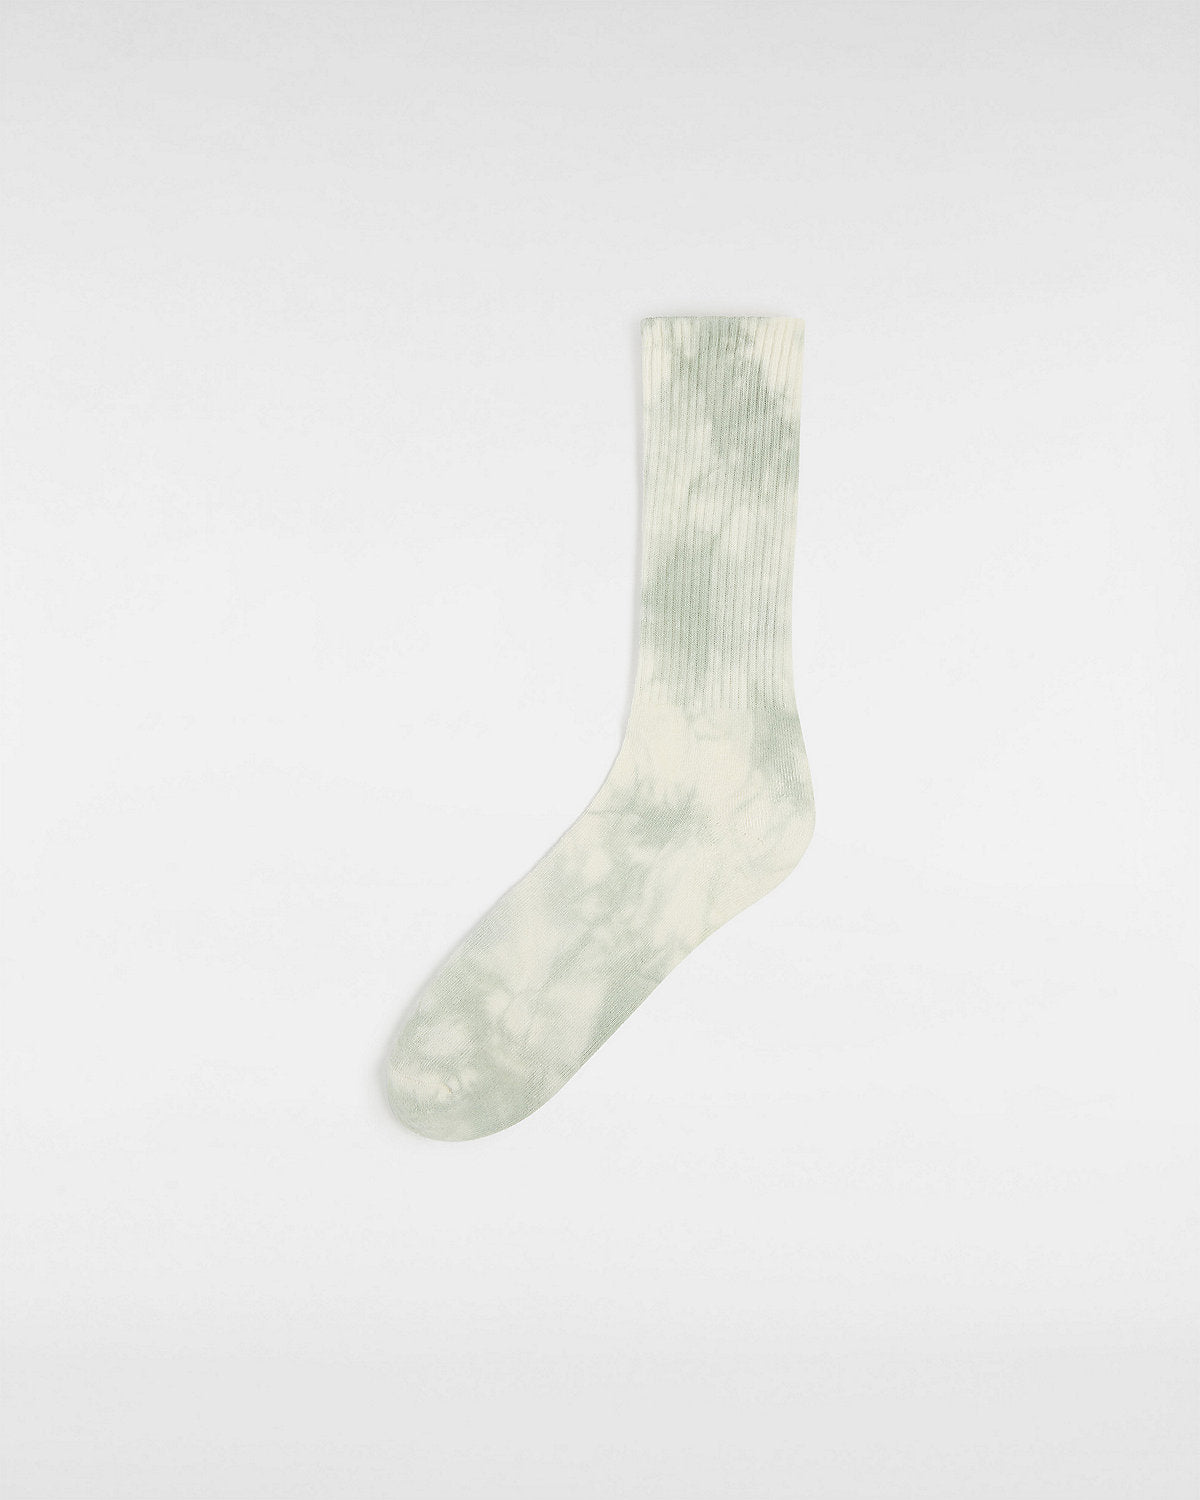 VANS Mens Tie Dye Crew Socks (1 Pair) - Iceberg Green